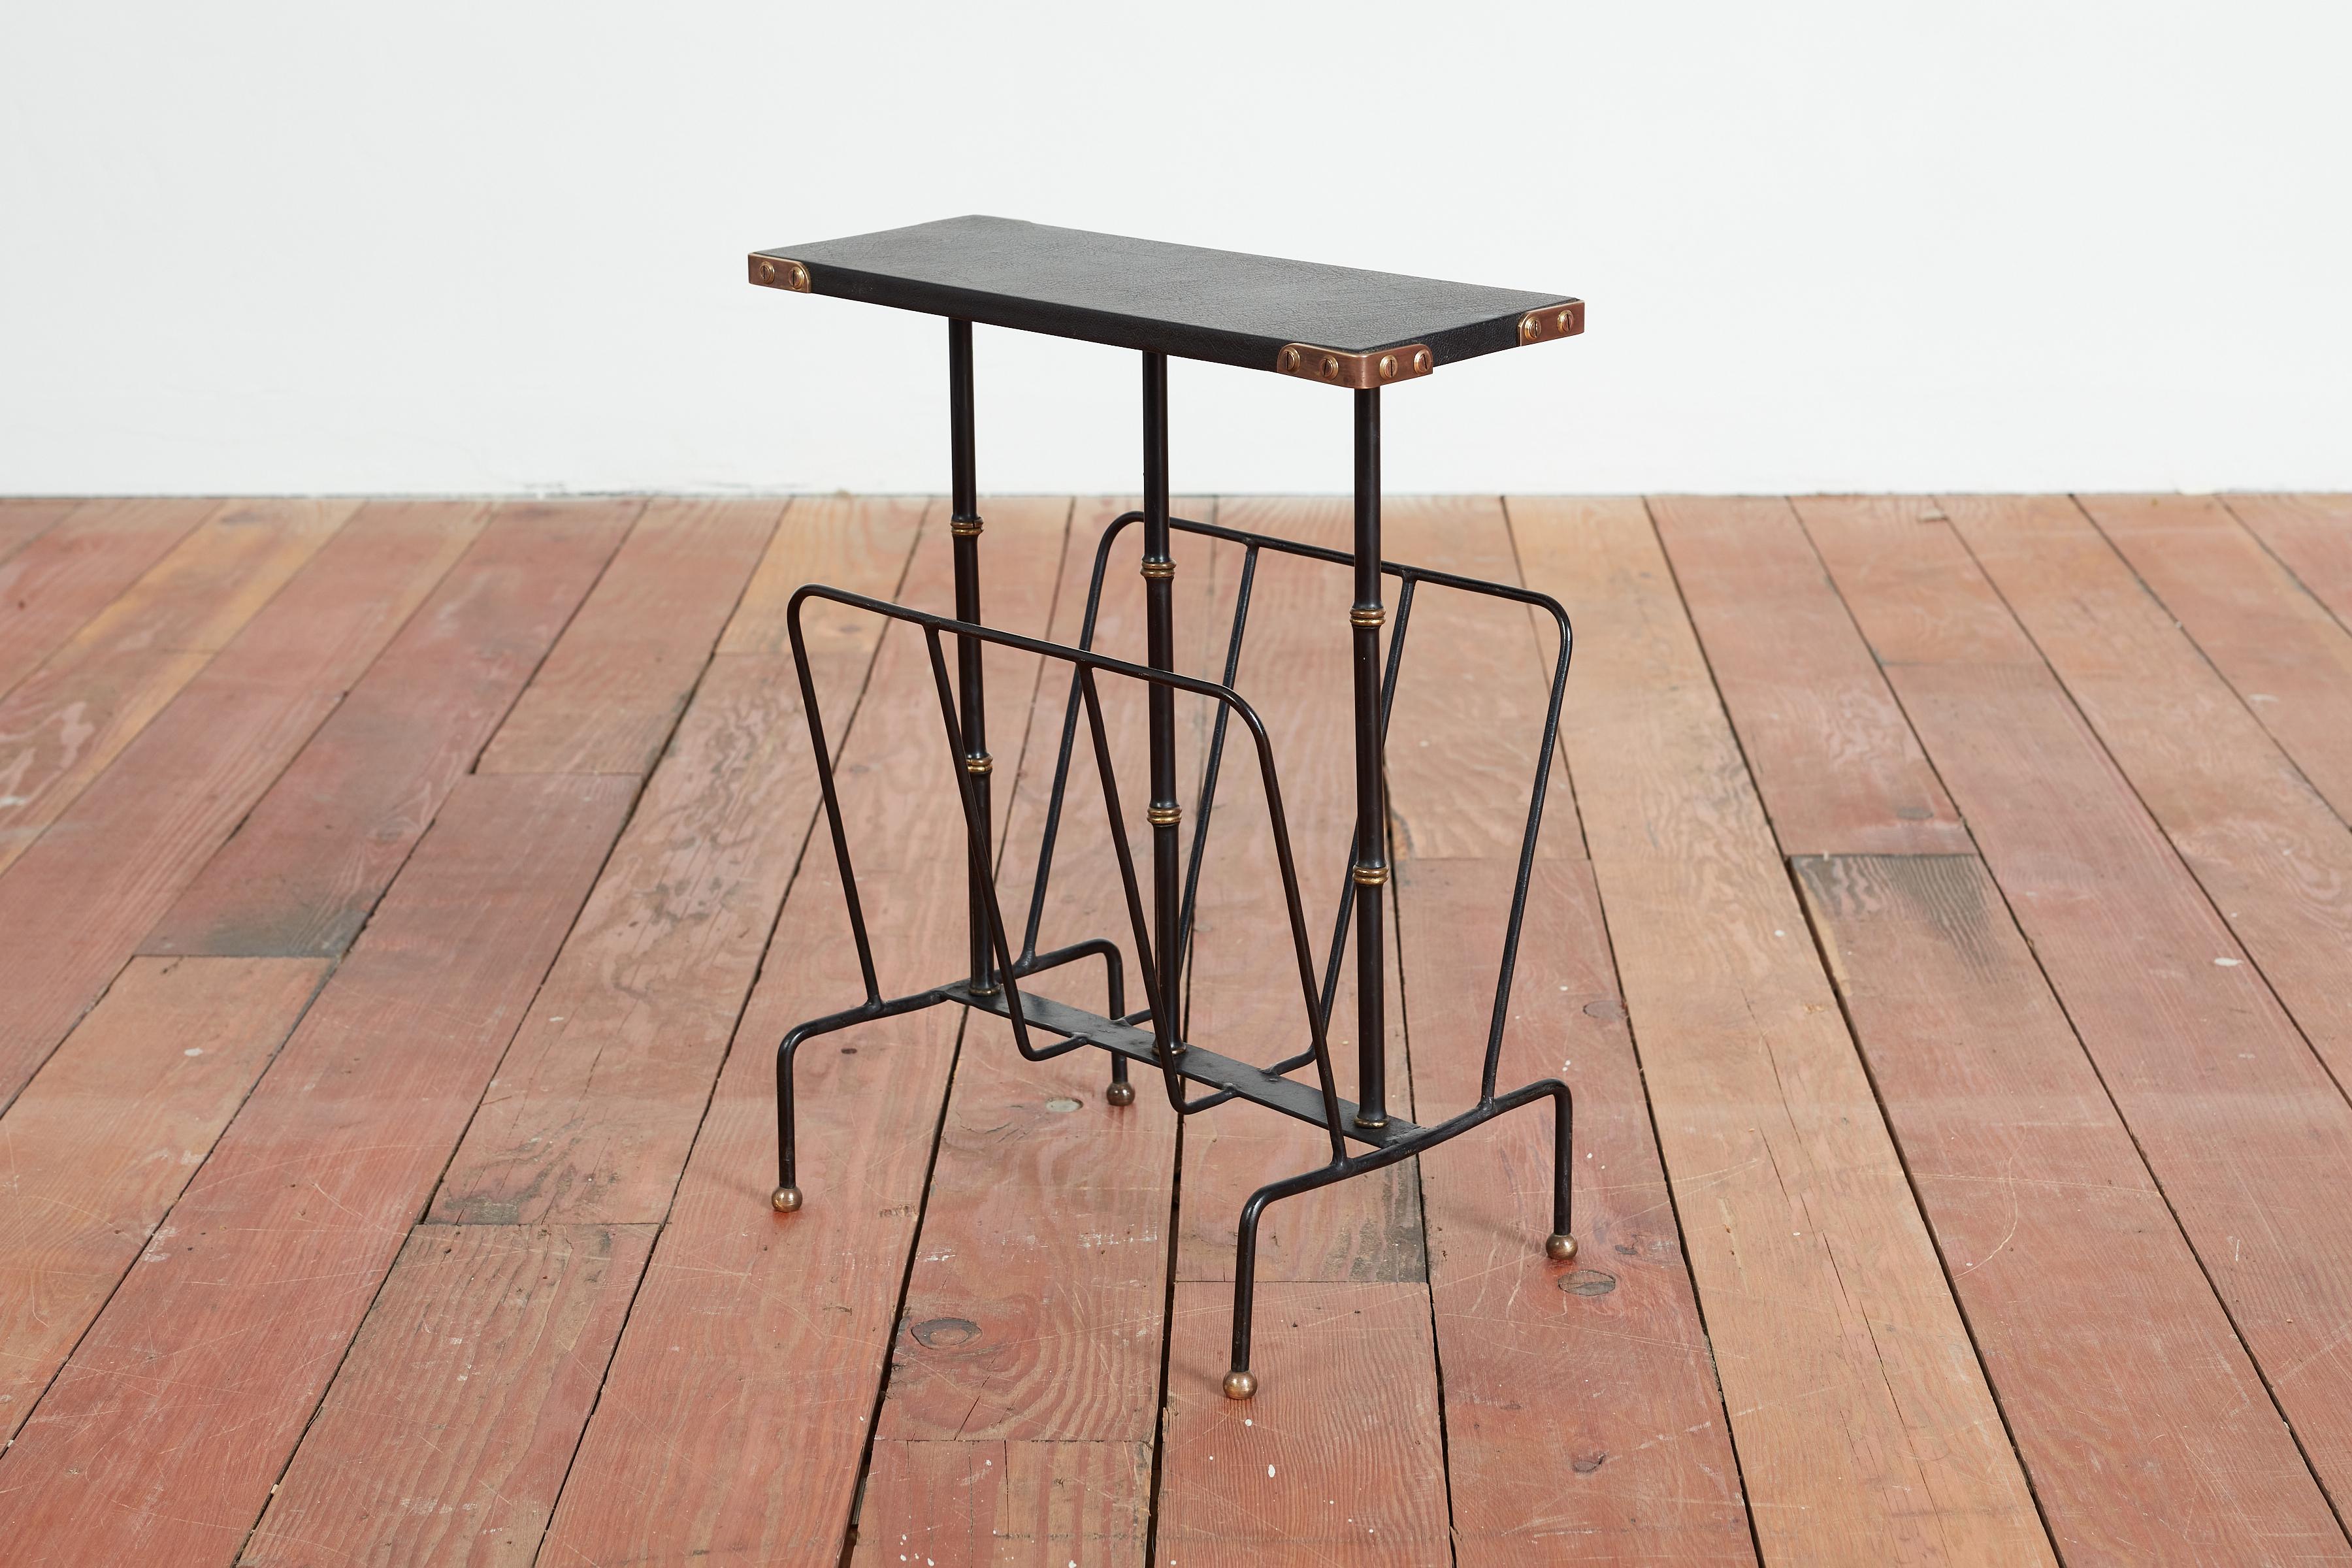 Table à revues avec porte-revues Jacques Adnet. 
Plateau en skaï noir, pieds en bambou noir et laiton, cadre en fer et détails d'angle en laiton.